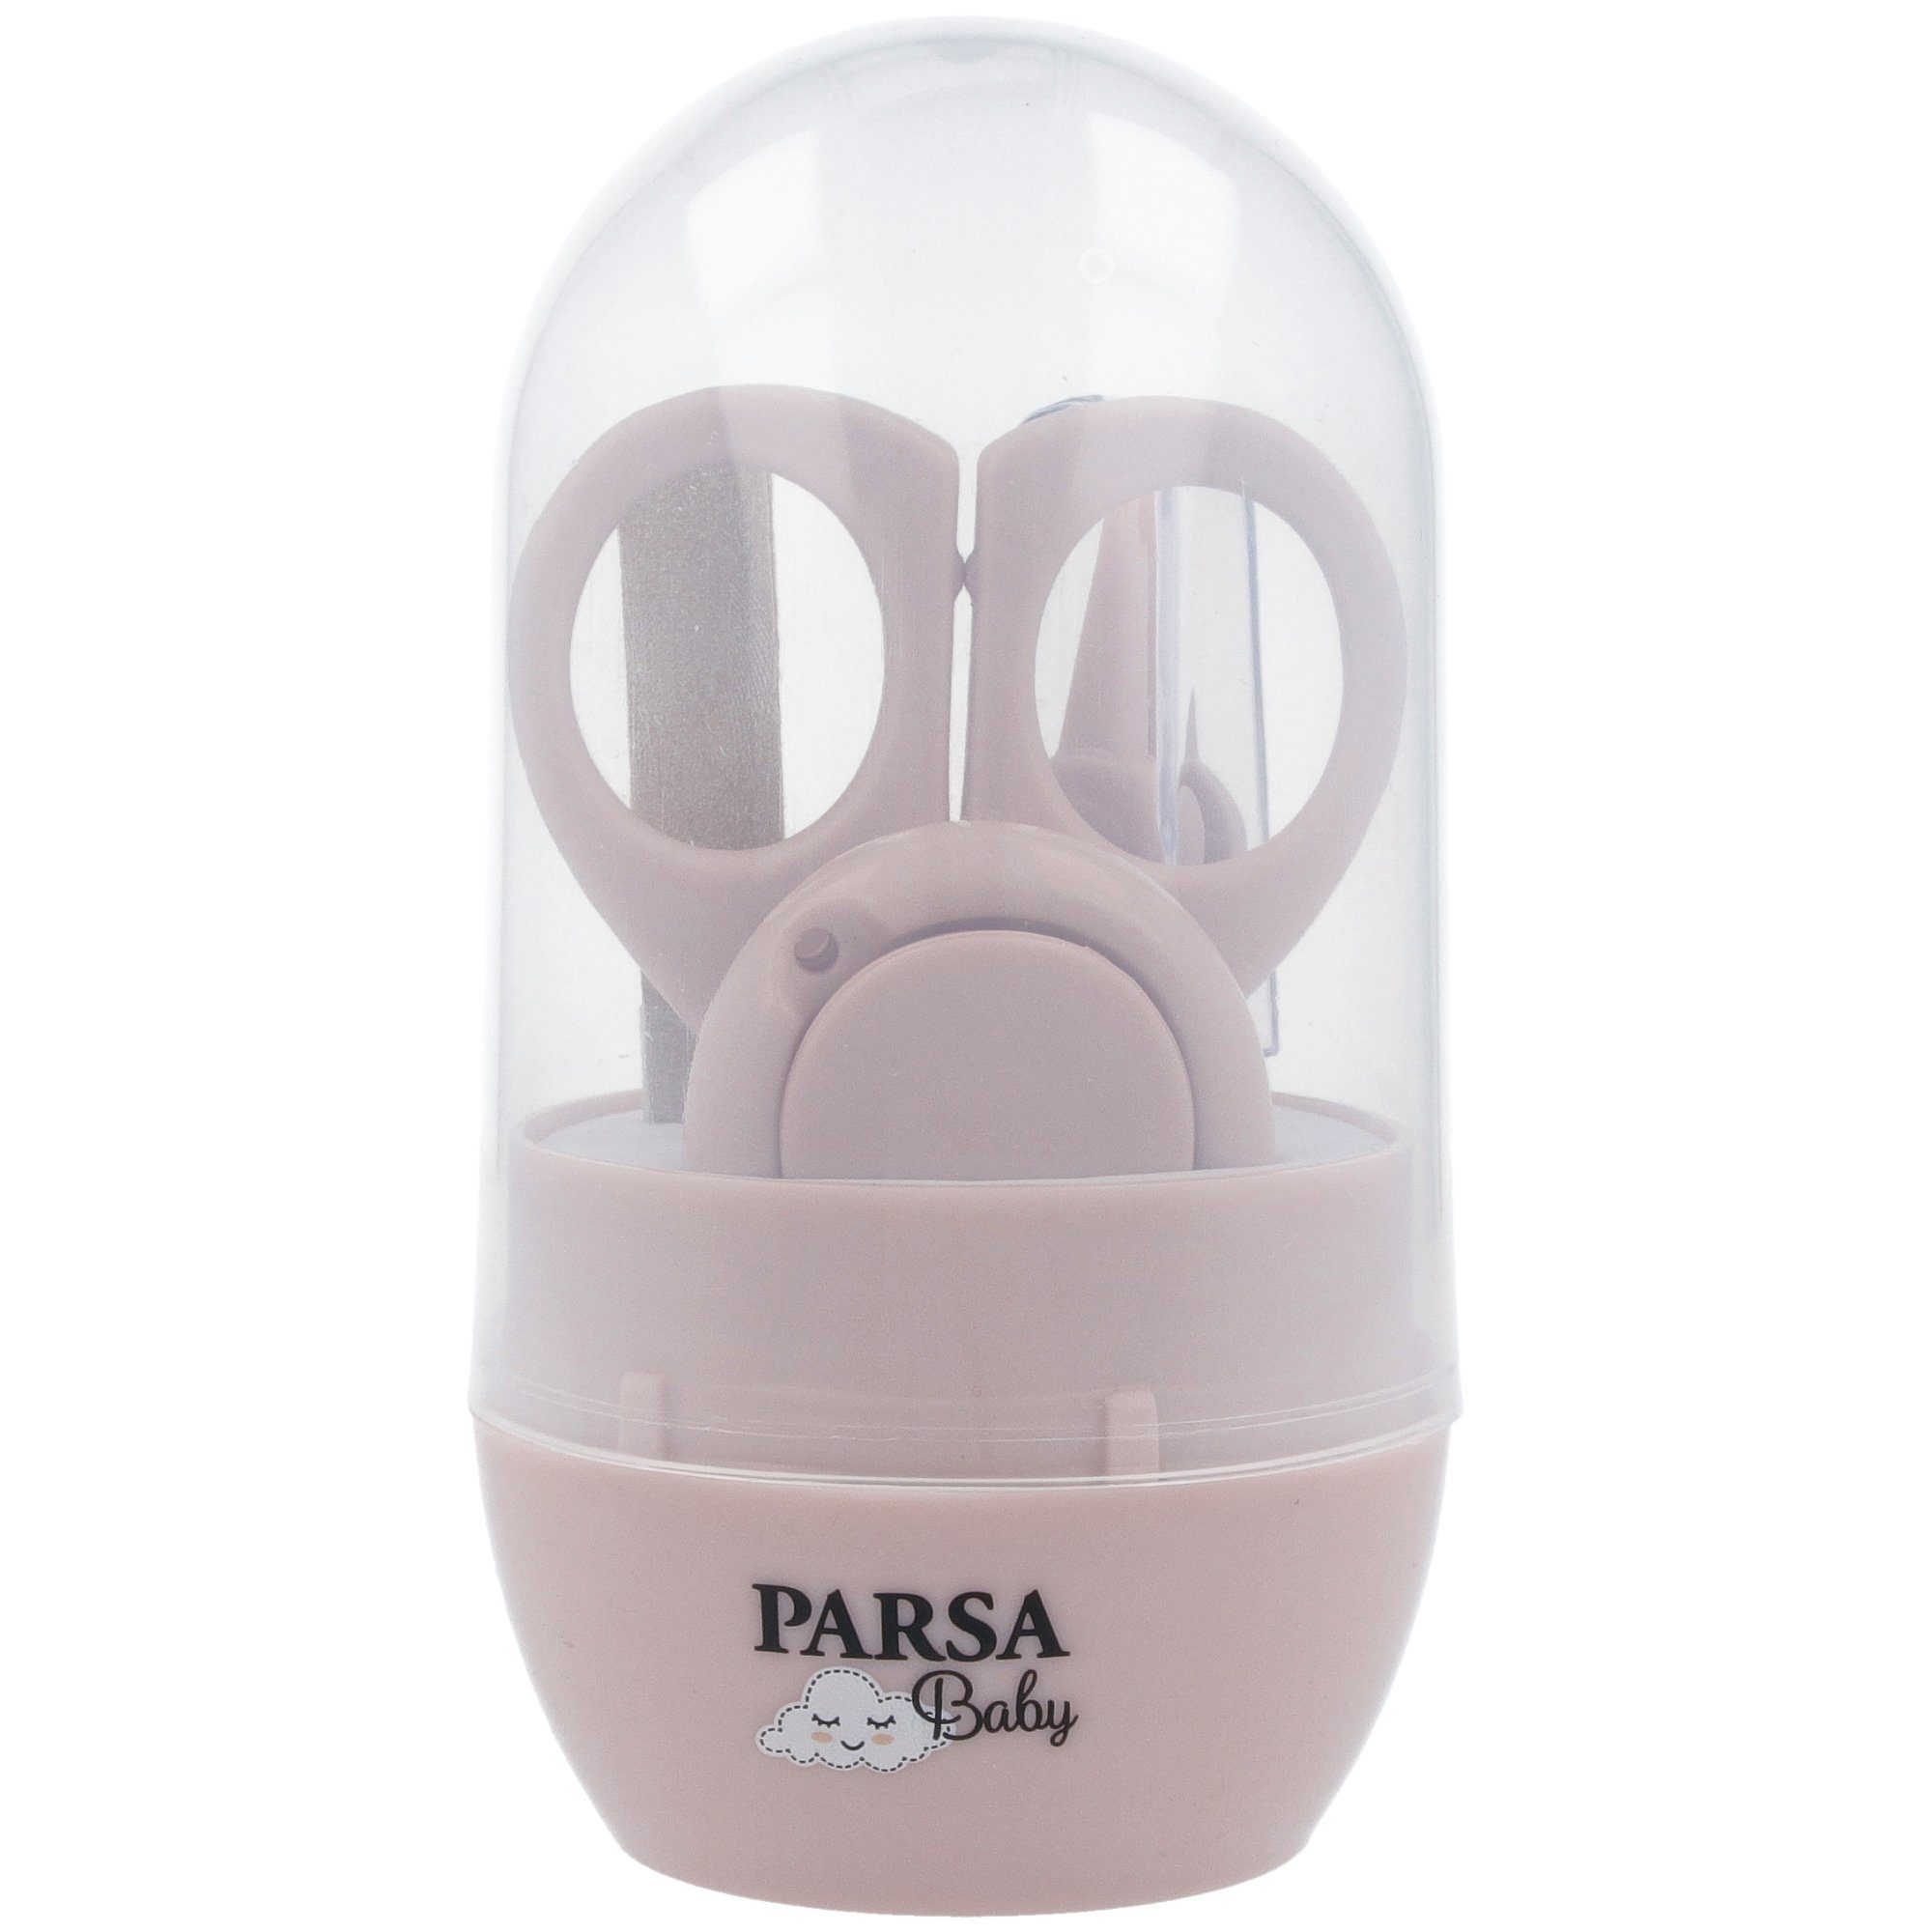 PARSA Baby Nagelknipser-Set »PARSA Baby Pflege-Set« online kaufen | OTTO